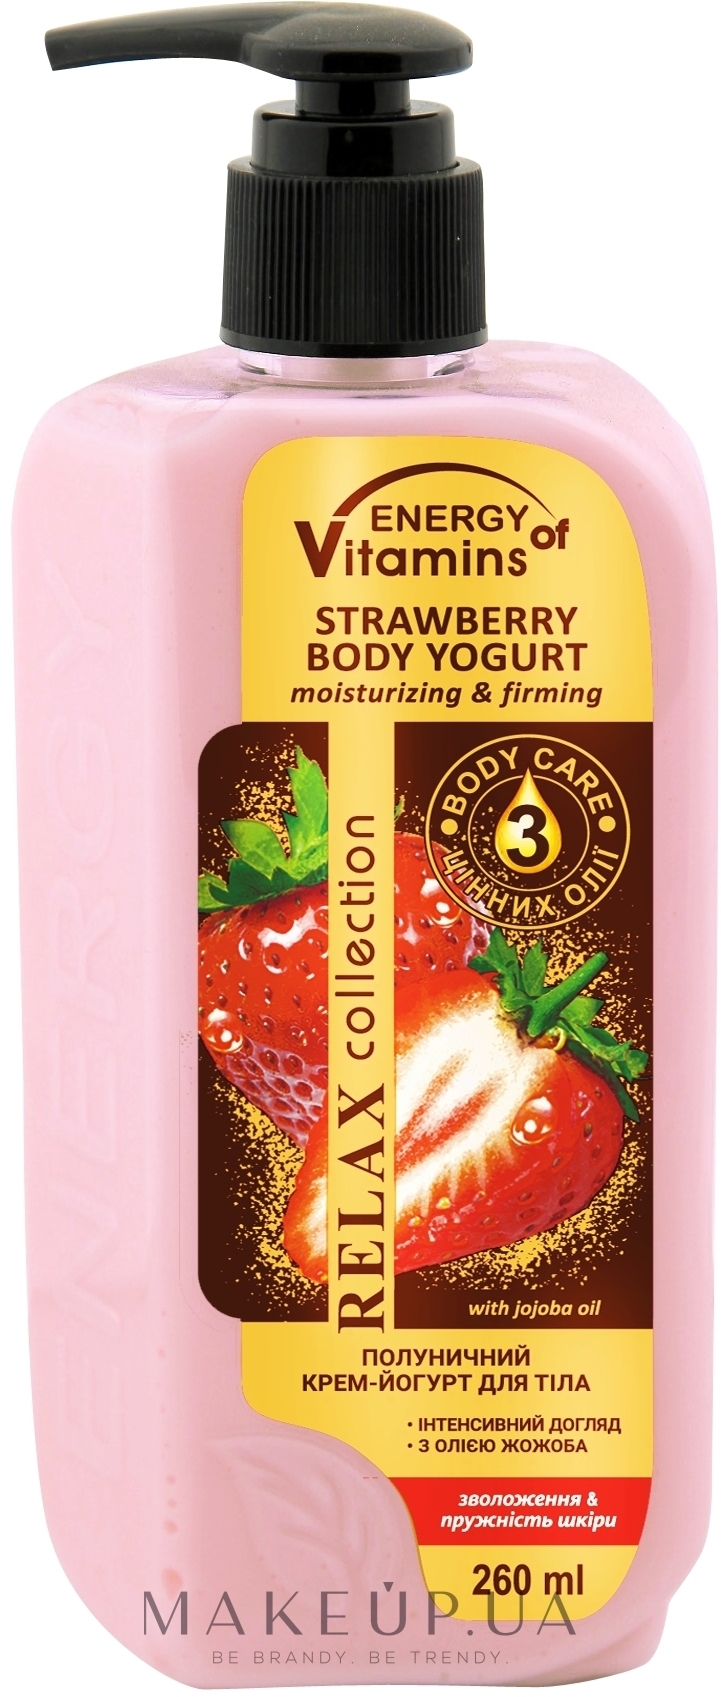 Клубничный крем-йогурт для тела "Увлажнение и упругость кожи" - Energy of Vitamins — фото 260ml